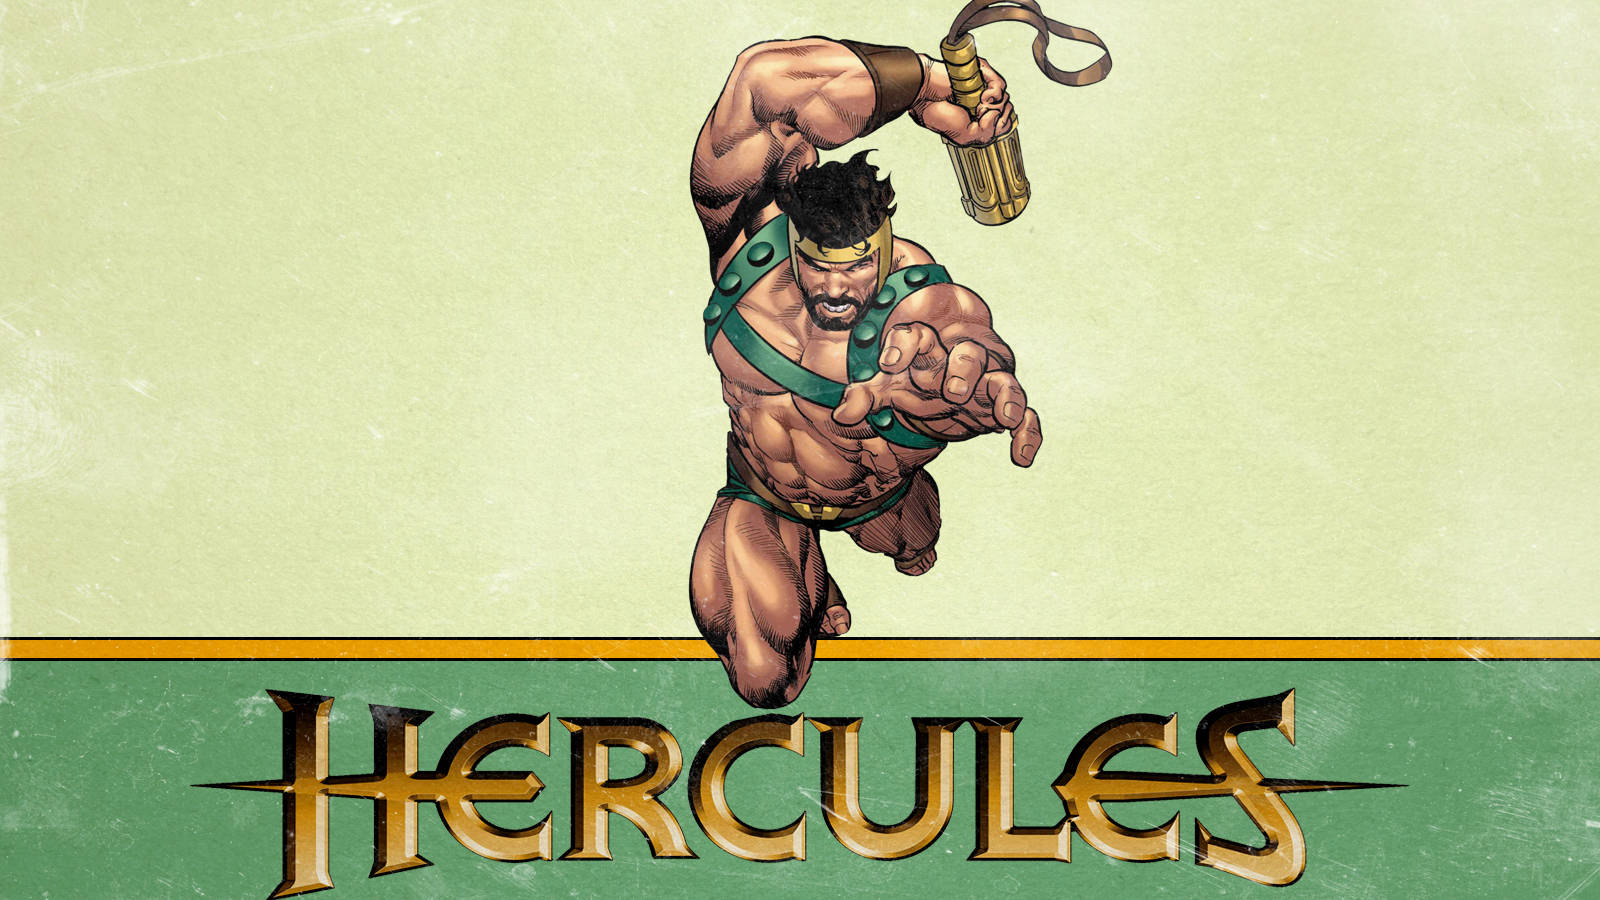 Hercules Comic Version Wallpaper